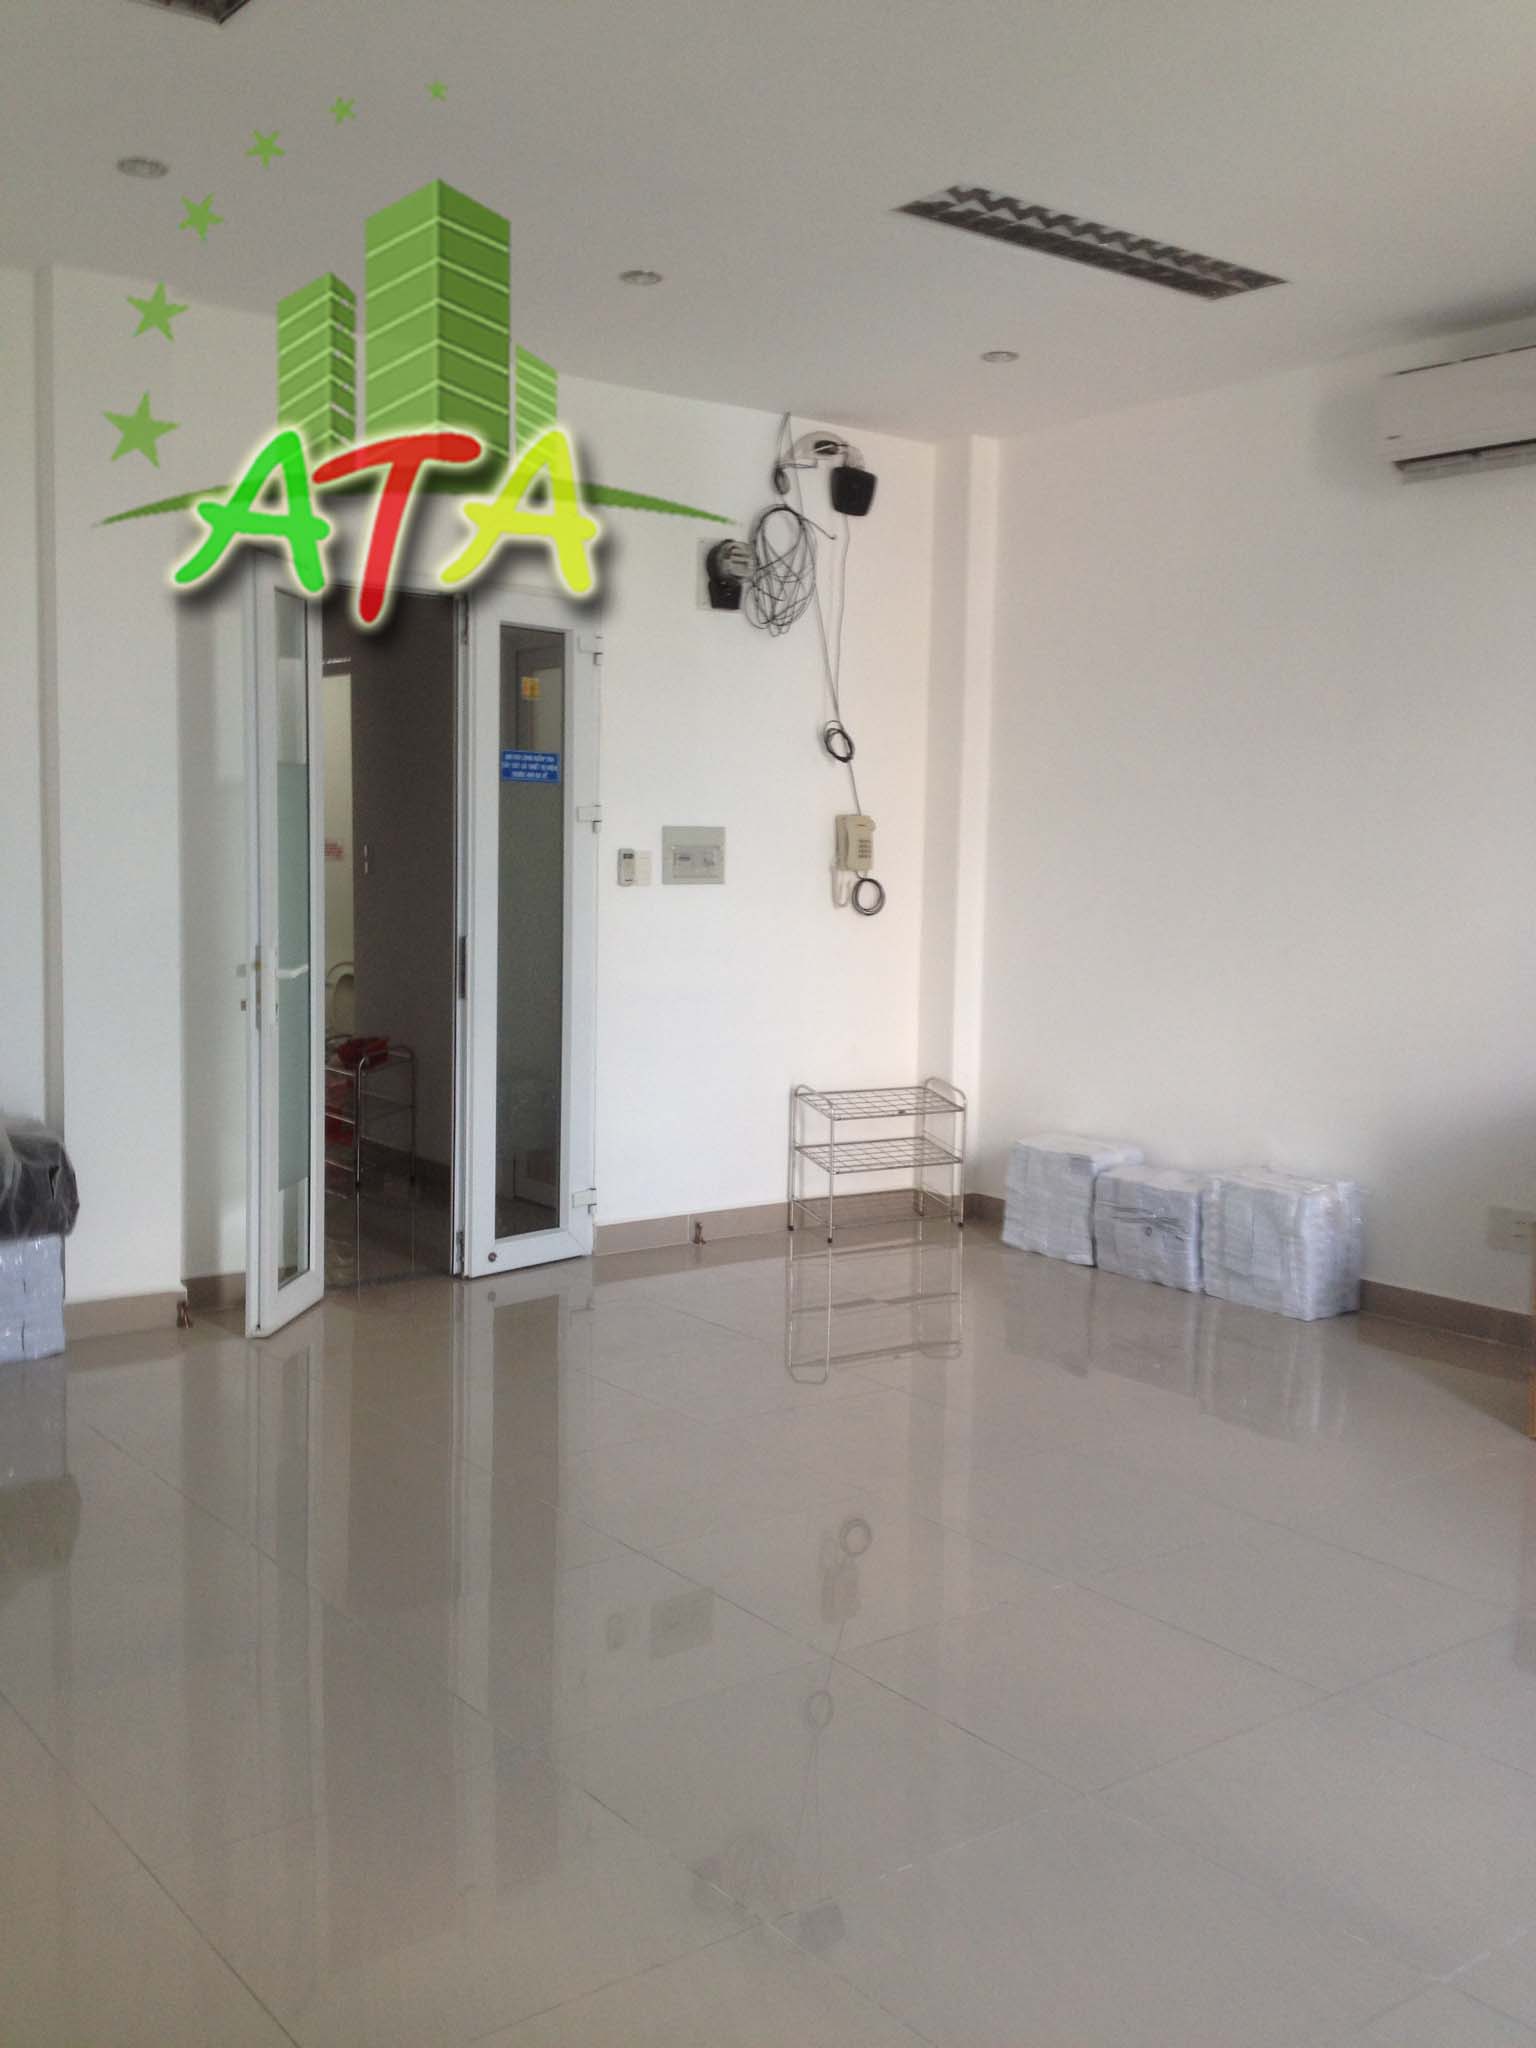 văn phòng cho thuê quận Tân Bình, HHT office Building đường Hoàng Hoa Thám, office for lease in HCMC